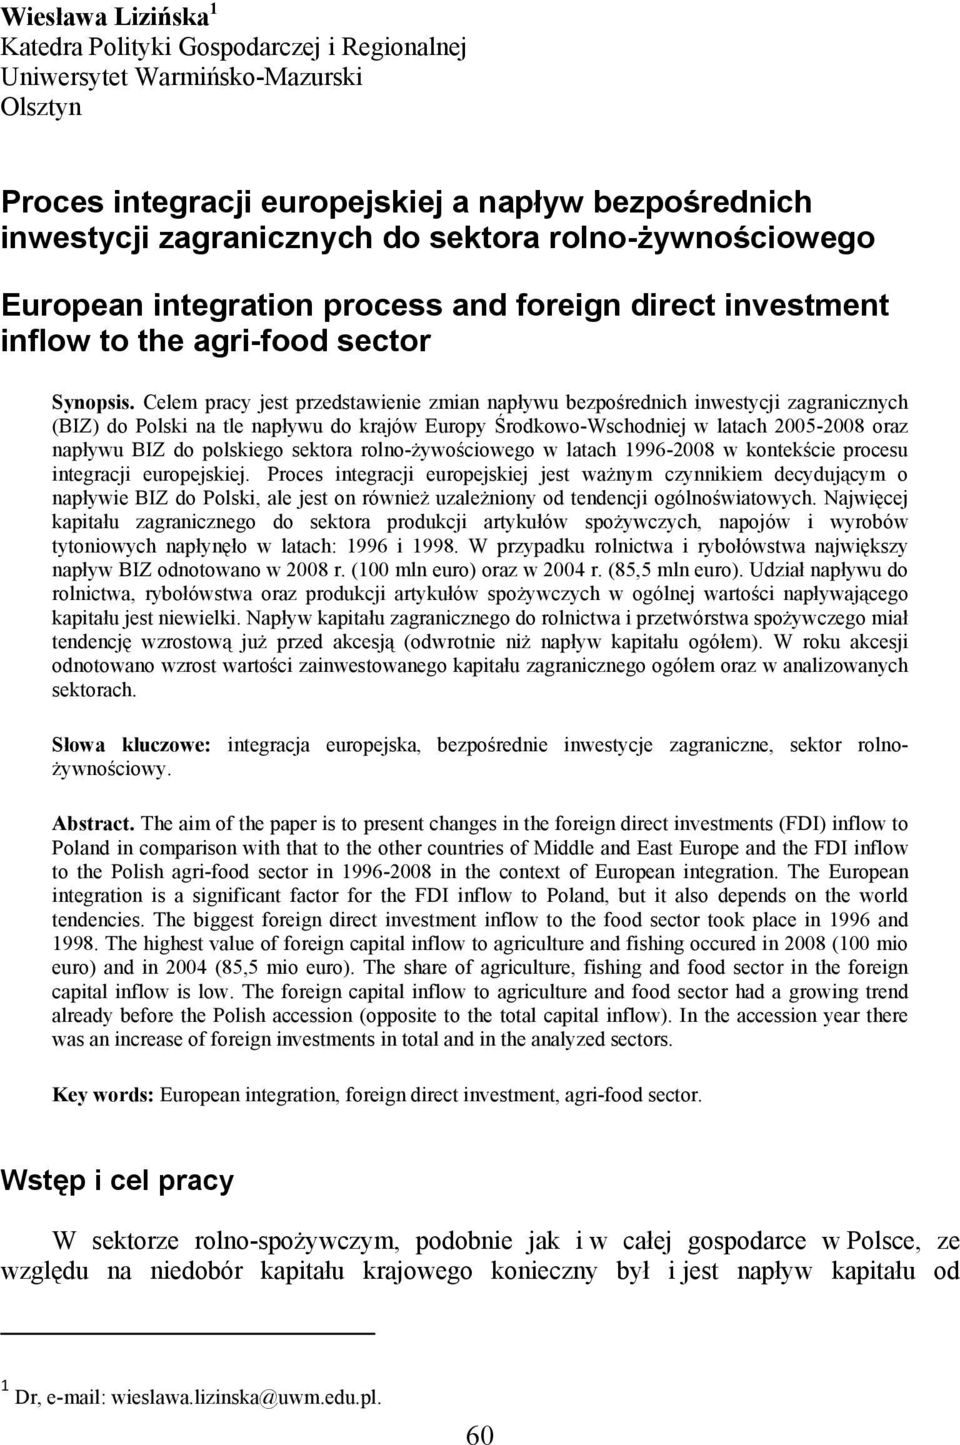 Celem pracy jest przedstawienie zmian napływu bezpośrednich inwestycji zagranicznych (BIZ) do Polski na tle napływu do krajów Europy Środkowo-Wschodniej w latach 2005-2008 oraz napływu BIZ do